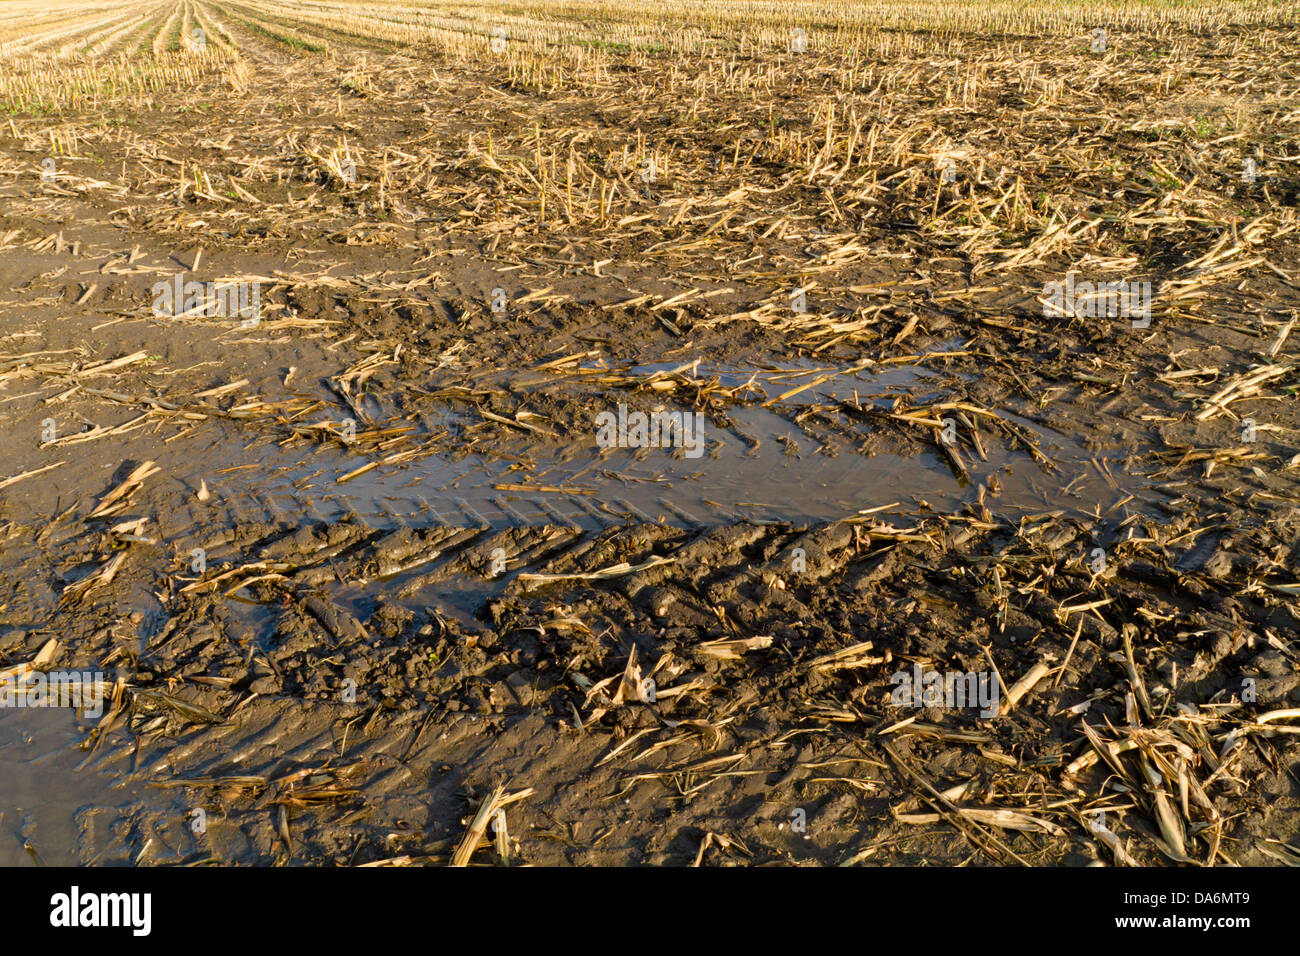 Muddy land mit reifenspuren im Schlamm am Rand eines Feldes auf landwirtschaftlichen Nutzflächen, die gerade geerntet wurde, England, Großbritannien Stockfoto